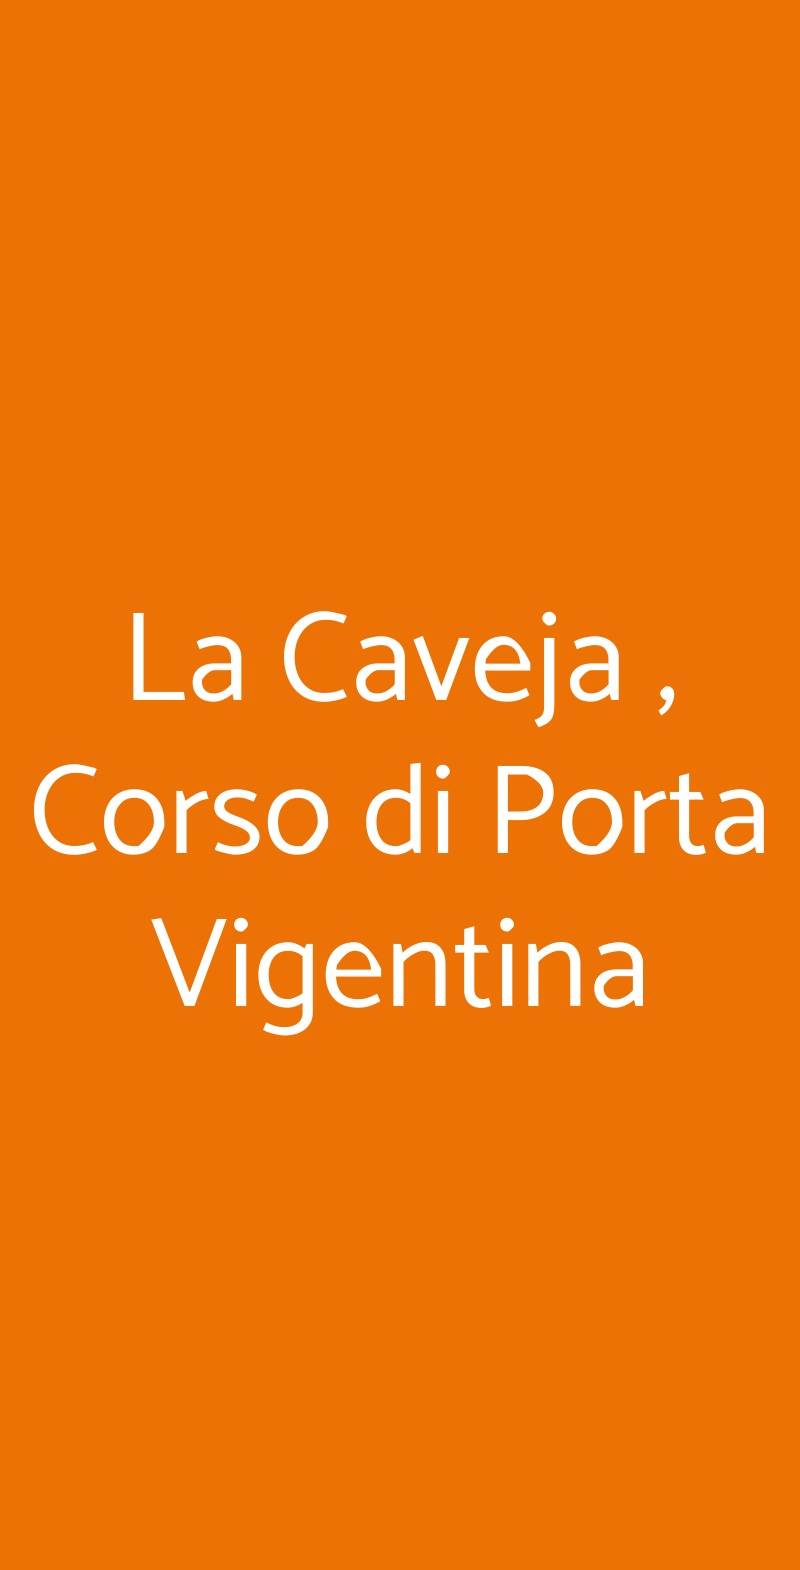 La Caveja , Corso di Porta Vigentina Milano menù 1 pagina